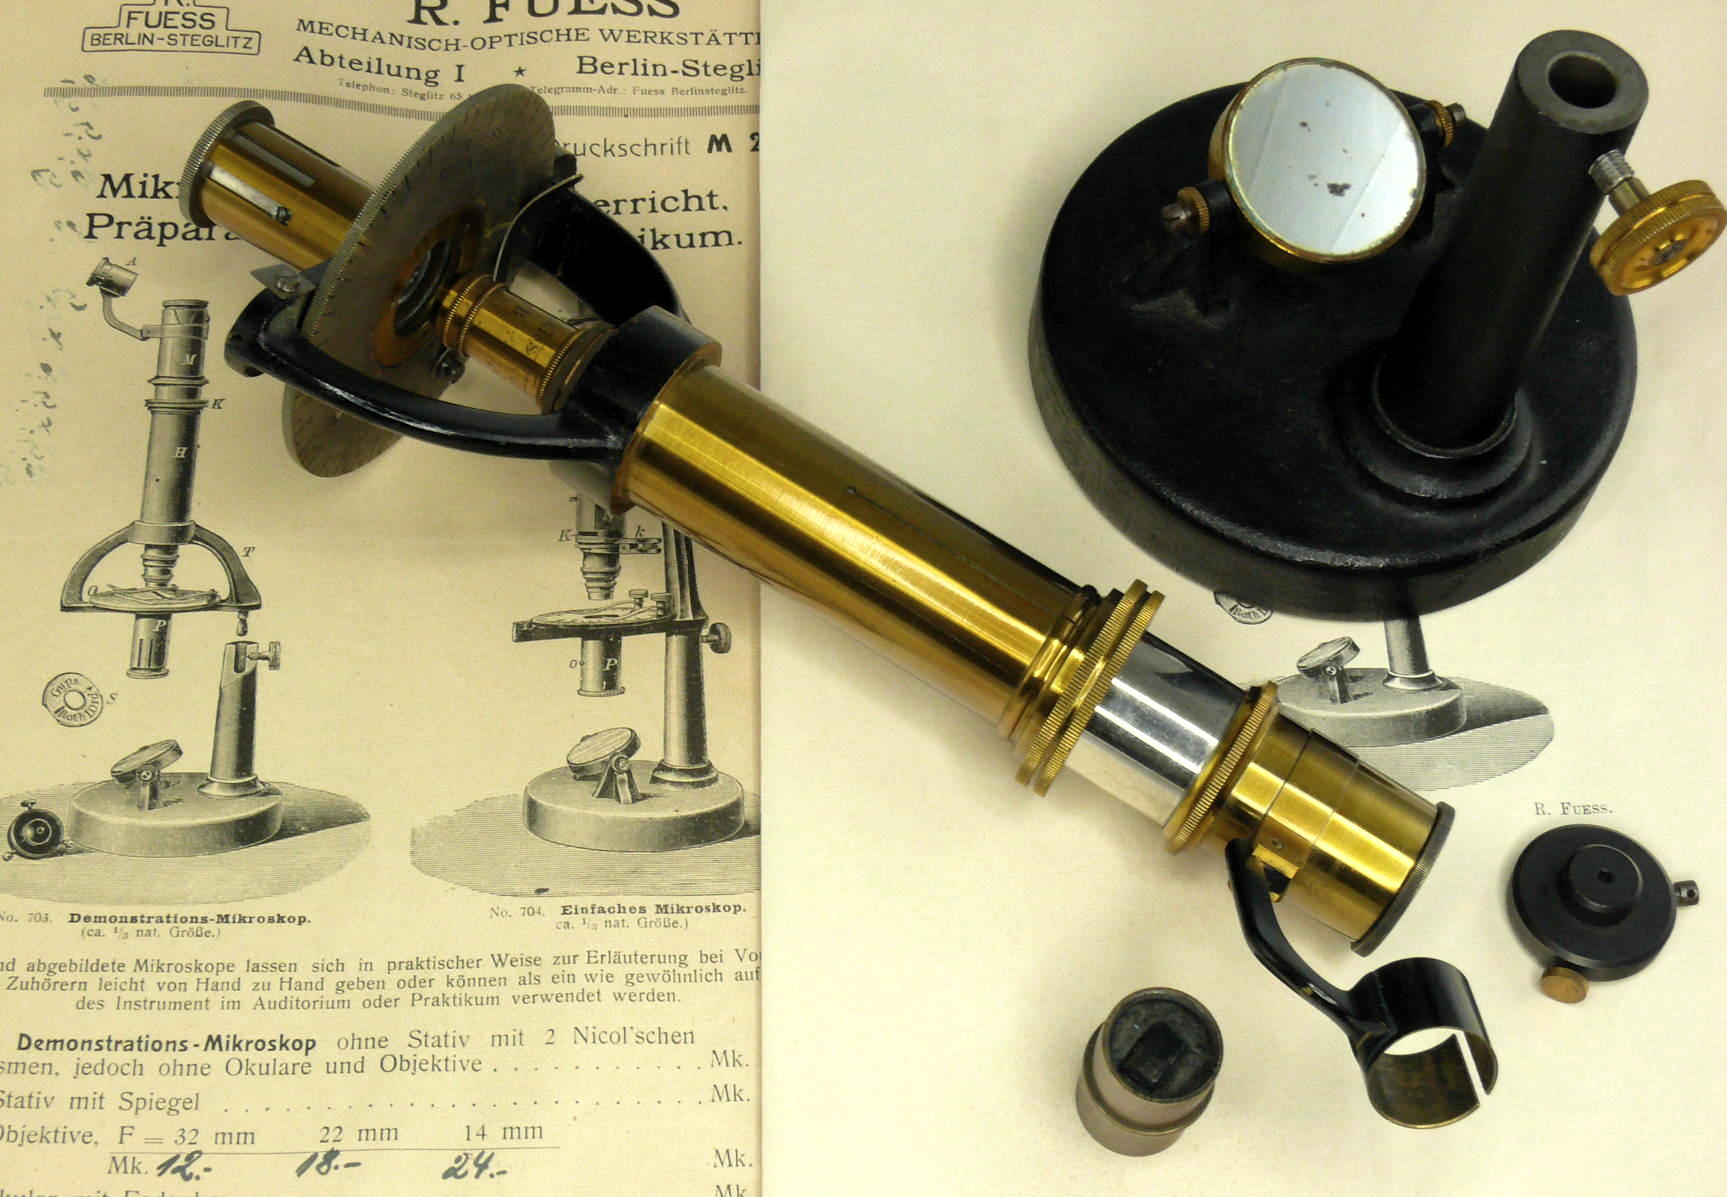 Microscope de minéralogiste/pétrographe de démonstration
(Fuess Model 703)